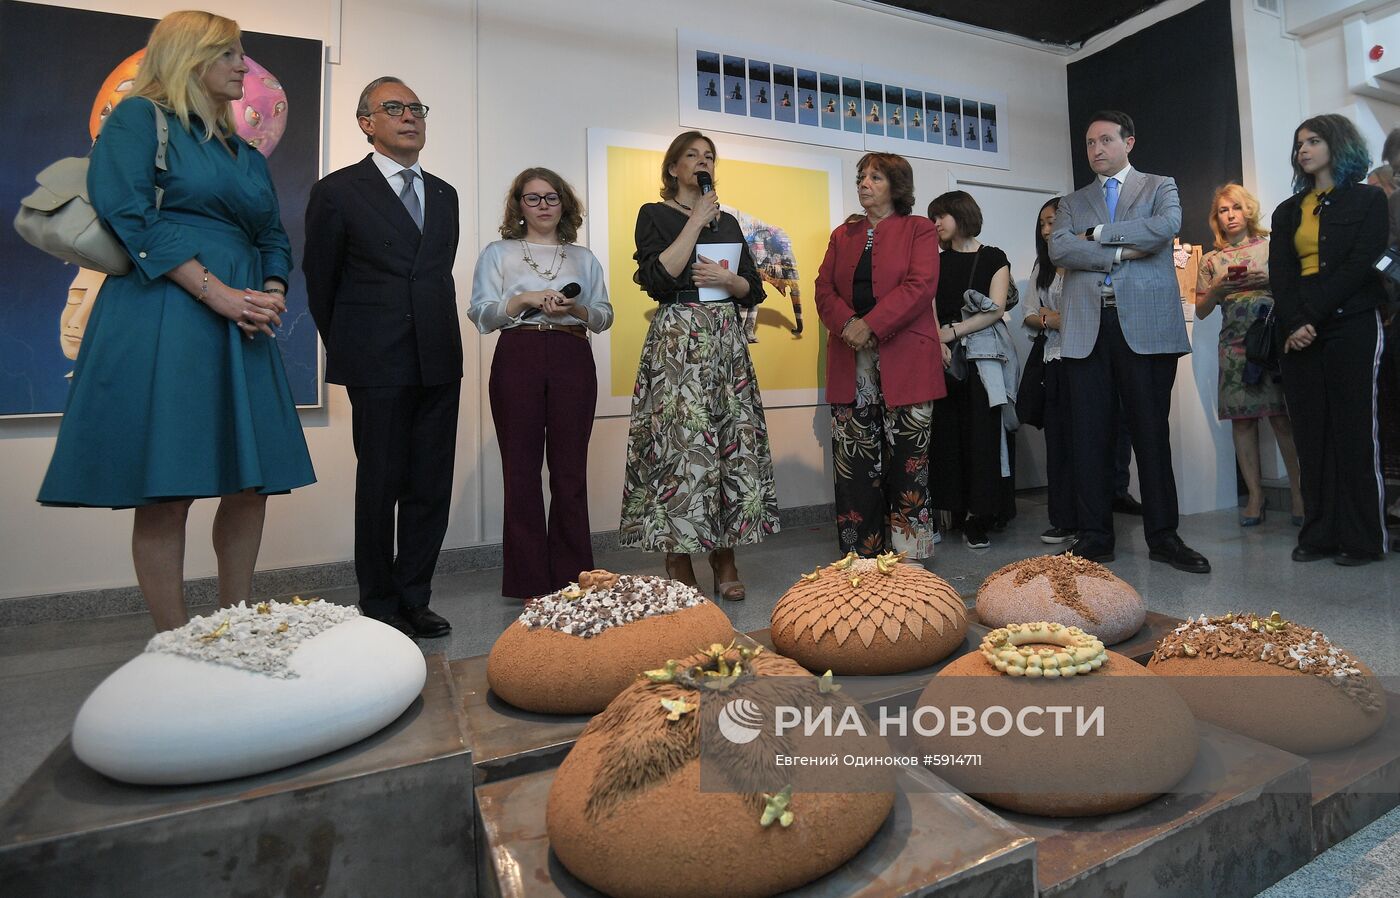 Открытие выставки "Путешествие в искусство" в Московском музее современного искусства